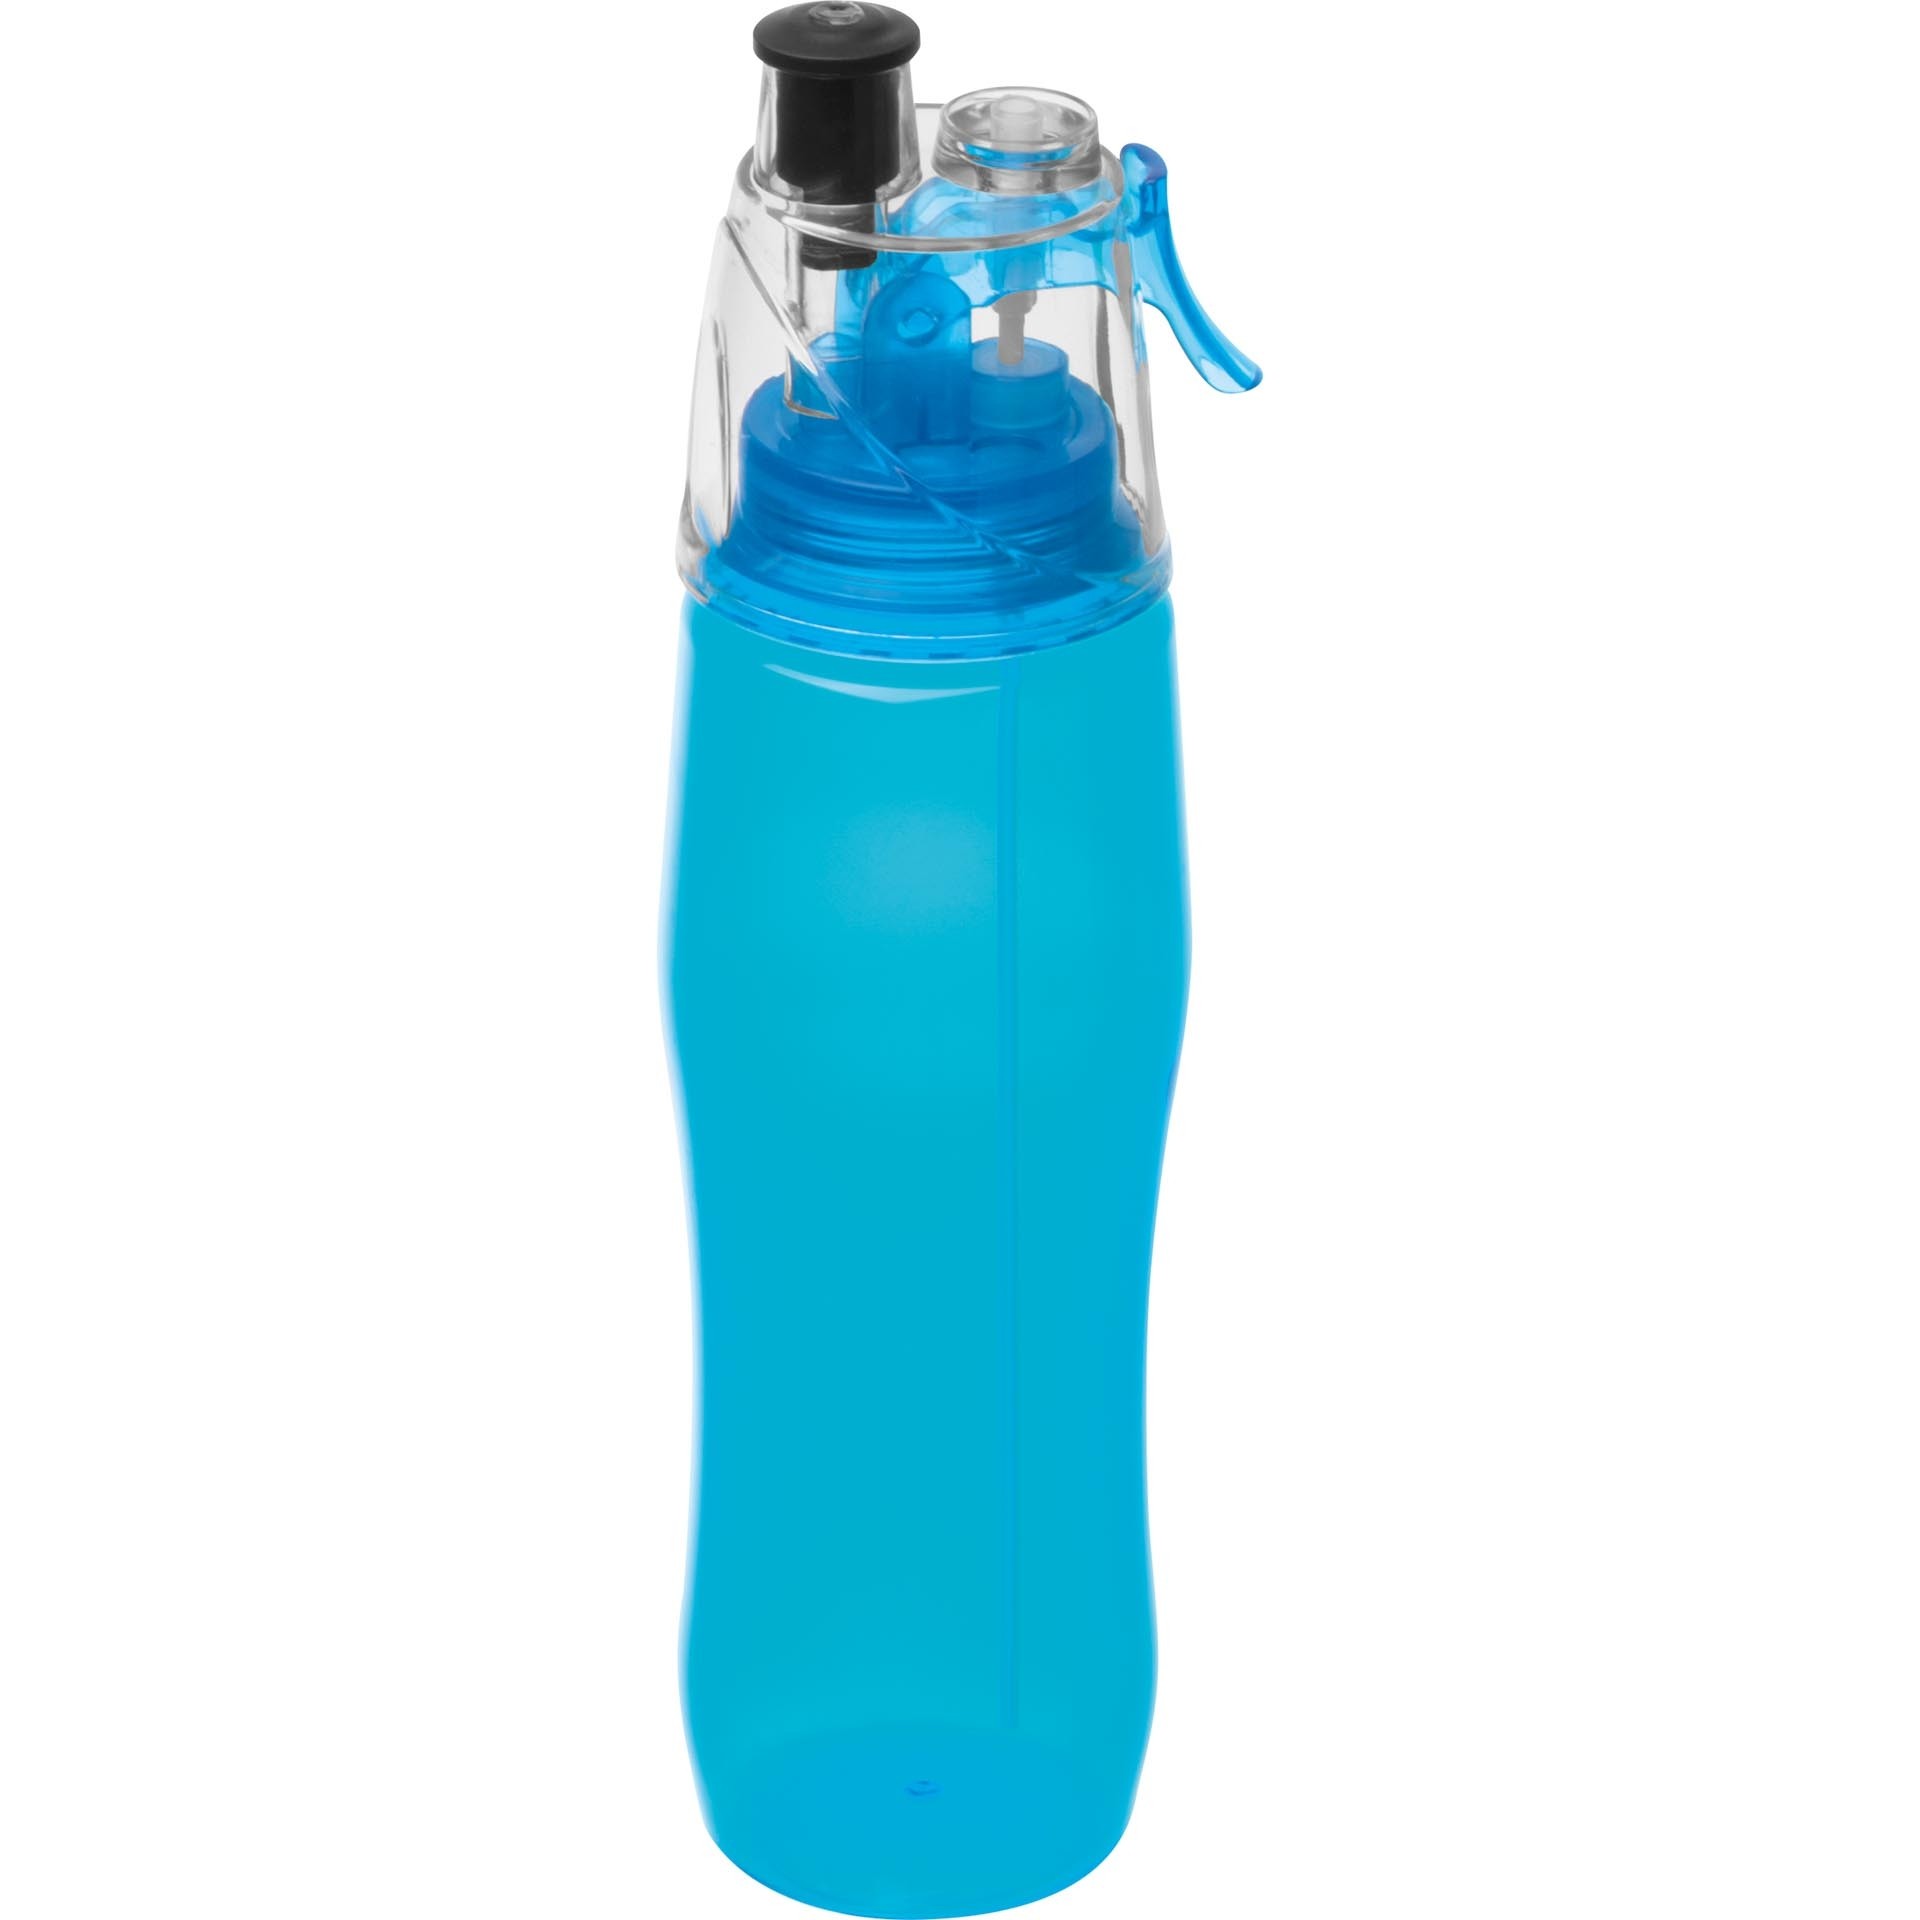 Sporttrinkflasche mit Sprayfunktion , hellblau